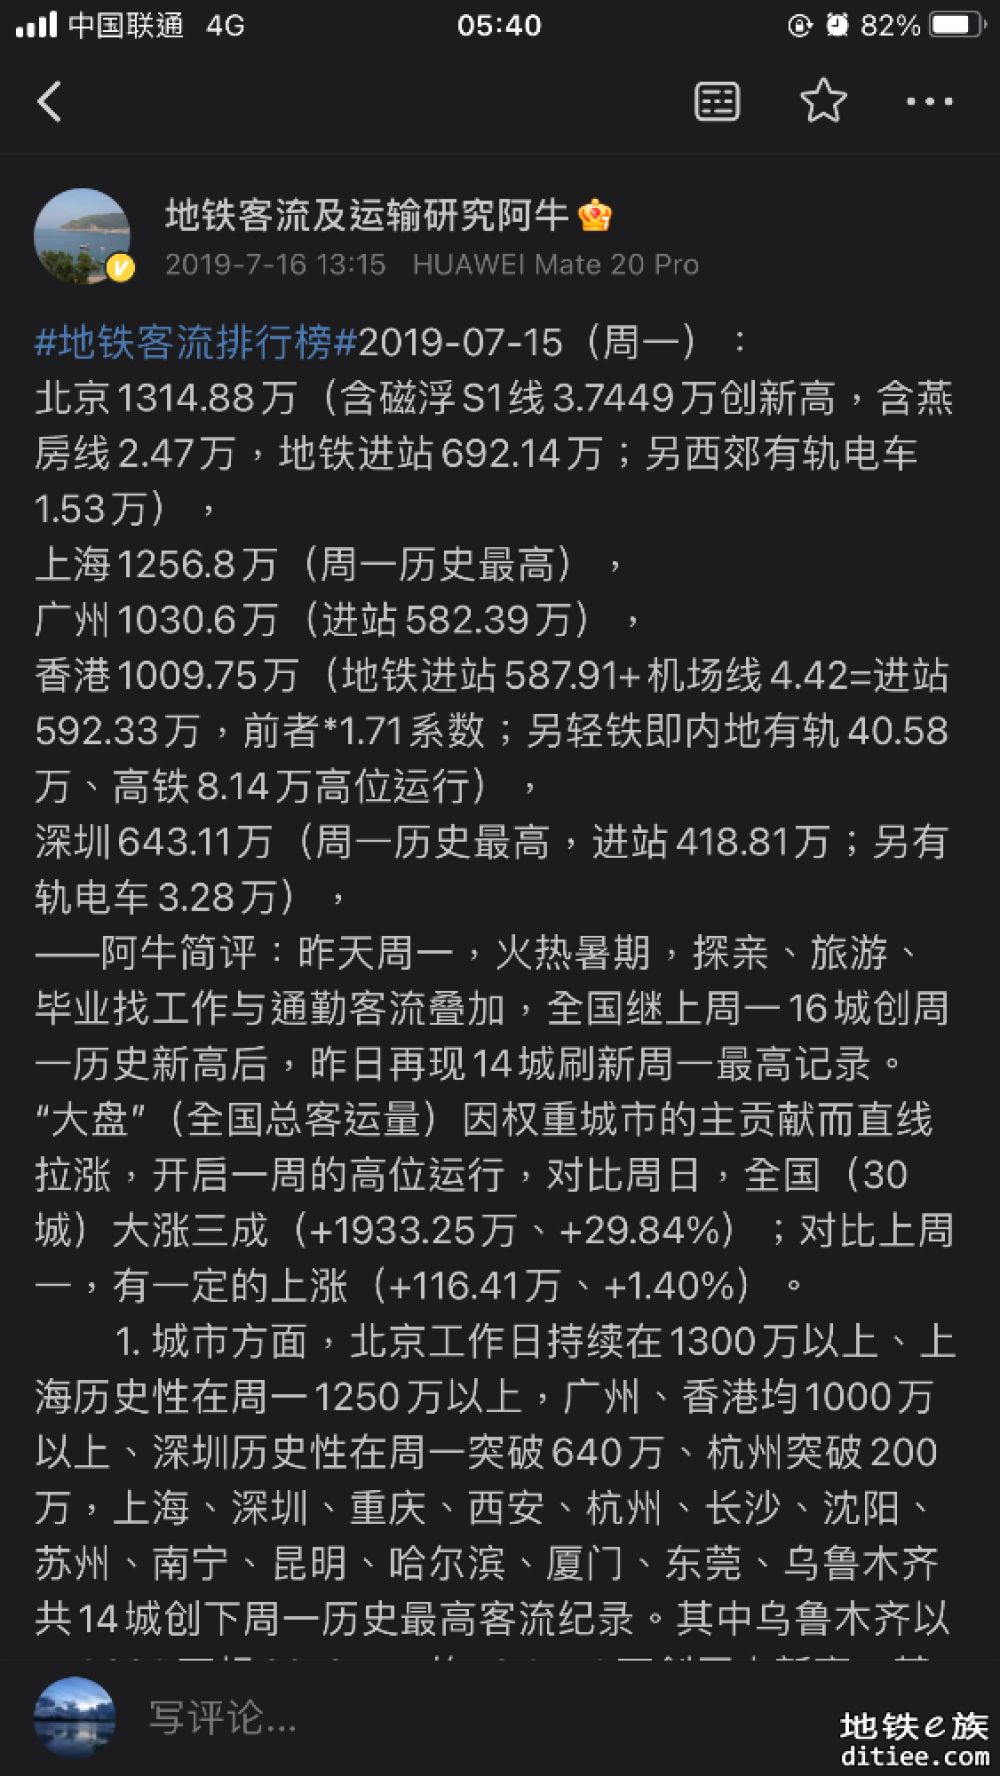 深圳和广州进站量差距缩小至日均17.4万